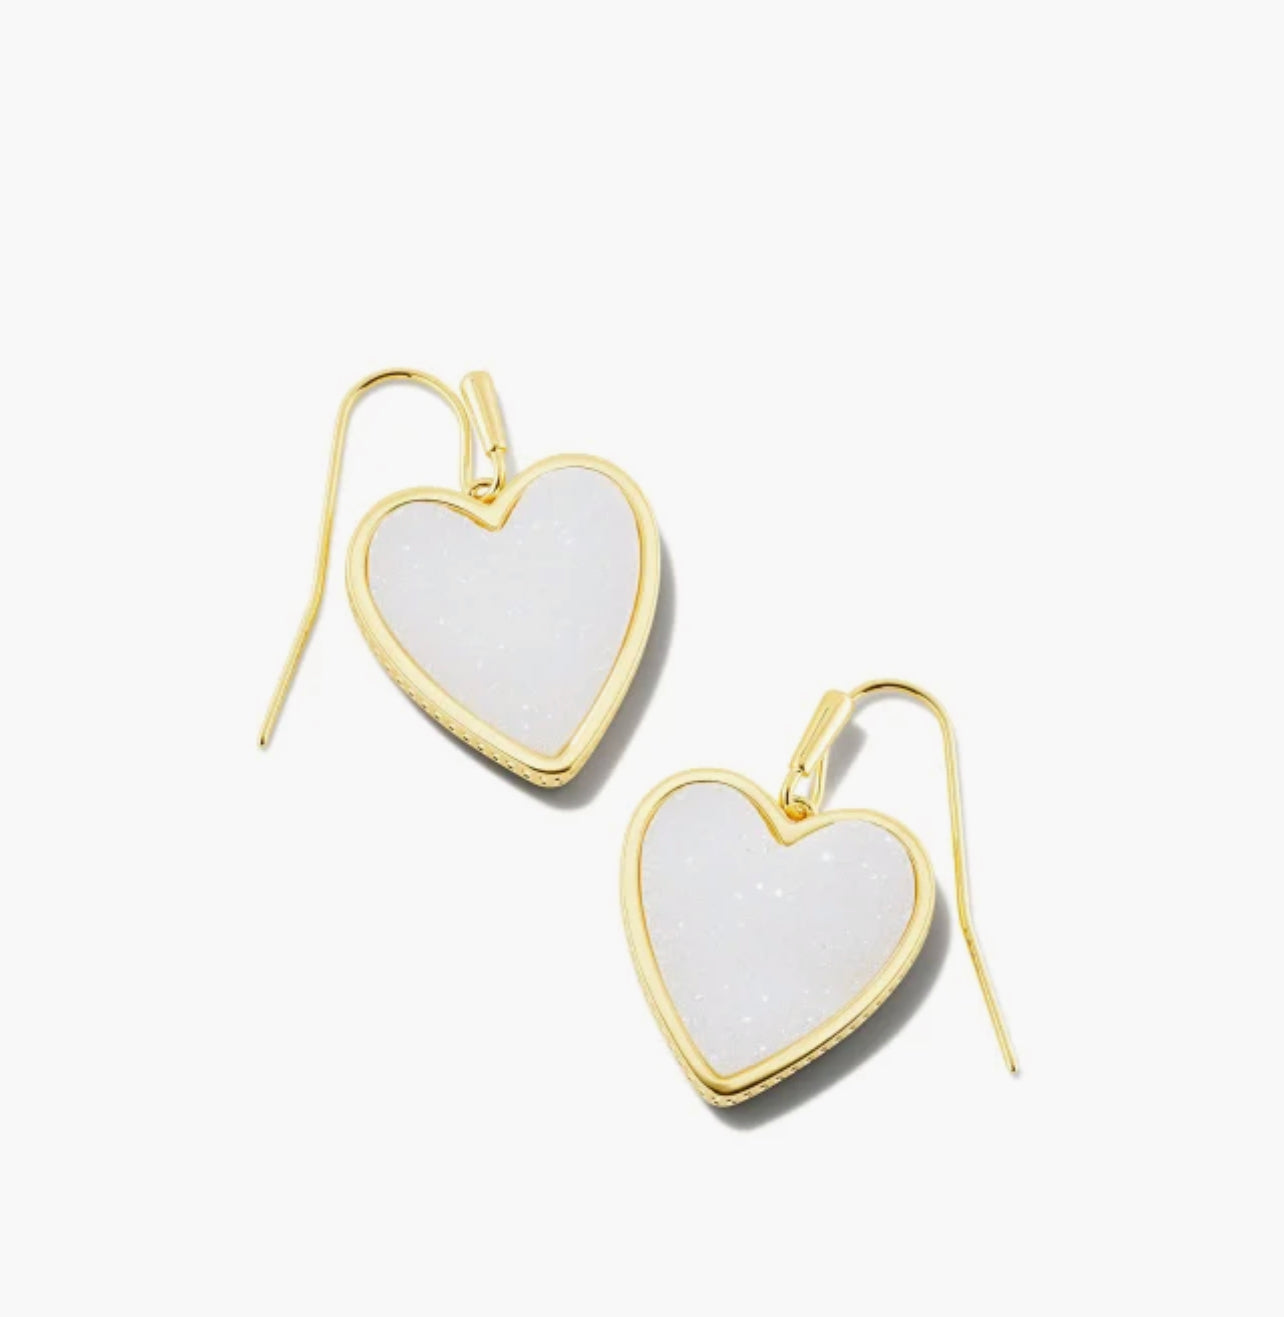 Kendra Scott Heart Drop Earrings